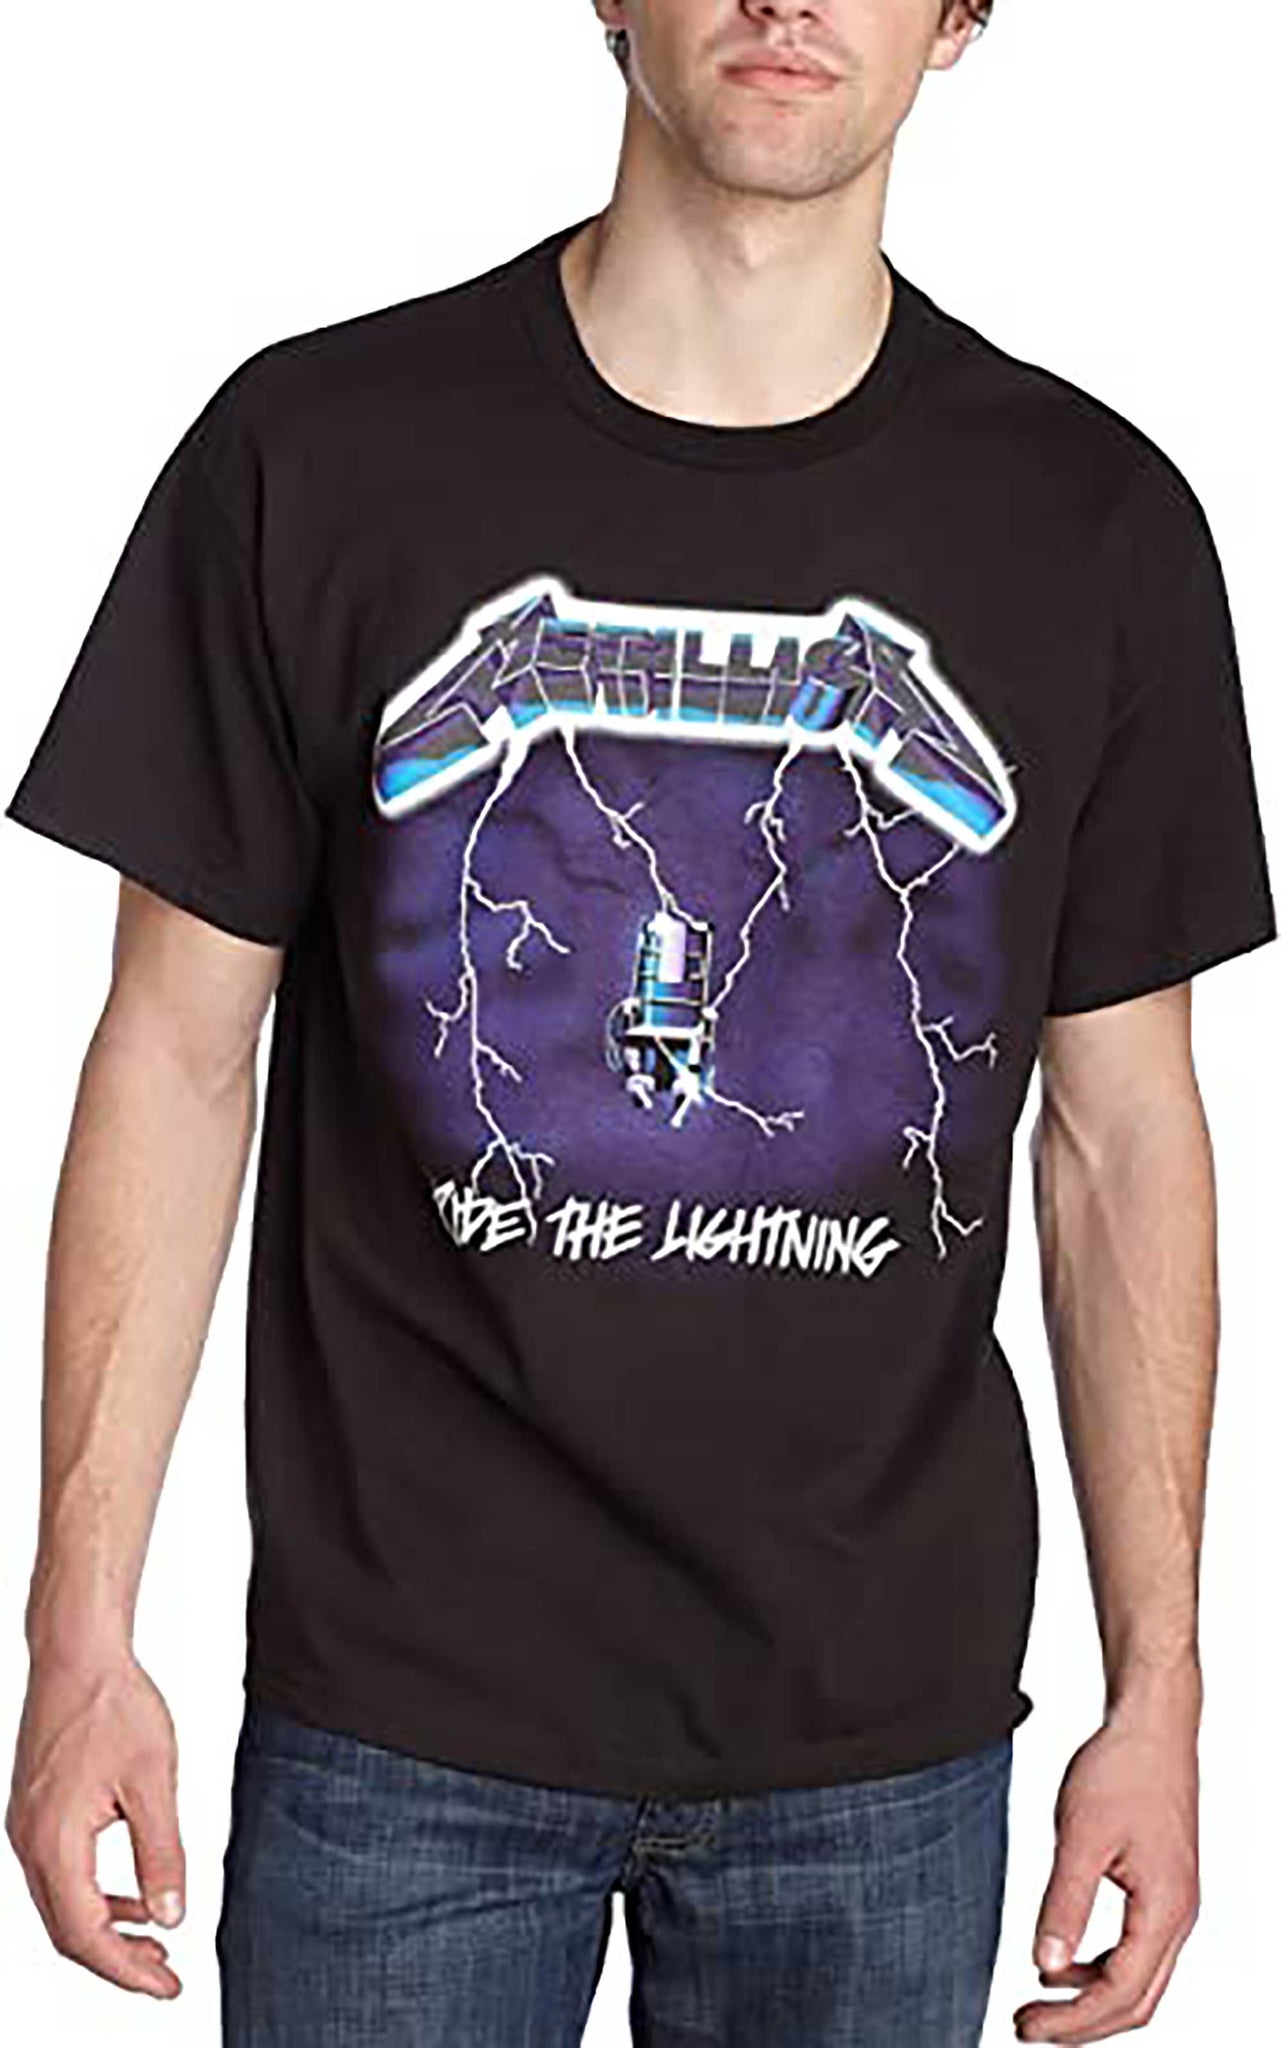 Skitongift Metallica Ride Lightning T Shirt